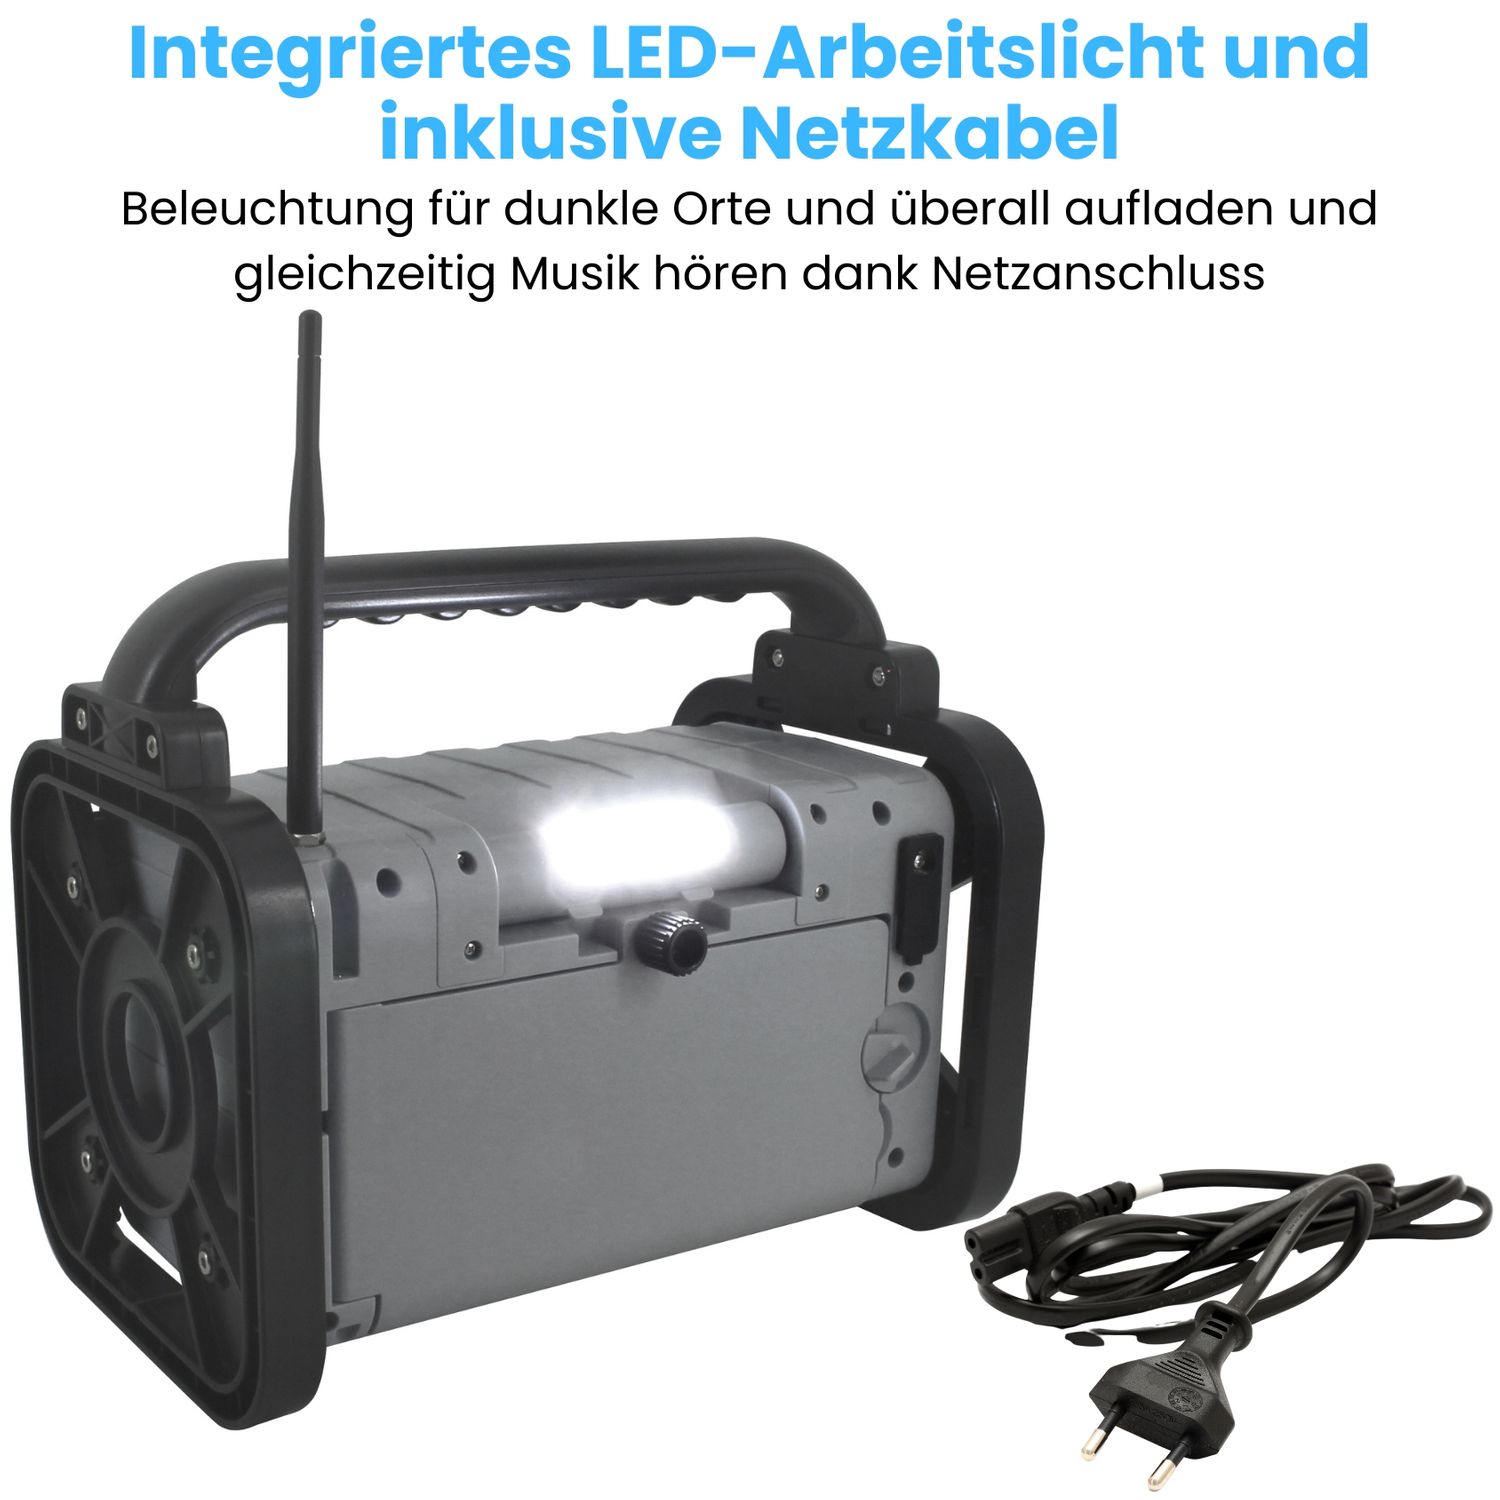 Soundmaster DAB80 Baustellenradio Gartenradio Digitalradio DAB+ UKW-RDS Bluetooth Li-Ion Akku IP44 staub- und spritzwassergeschützt